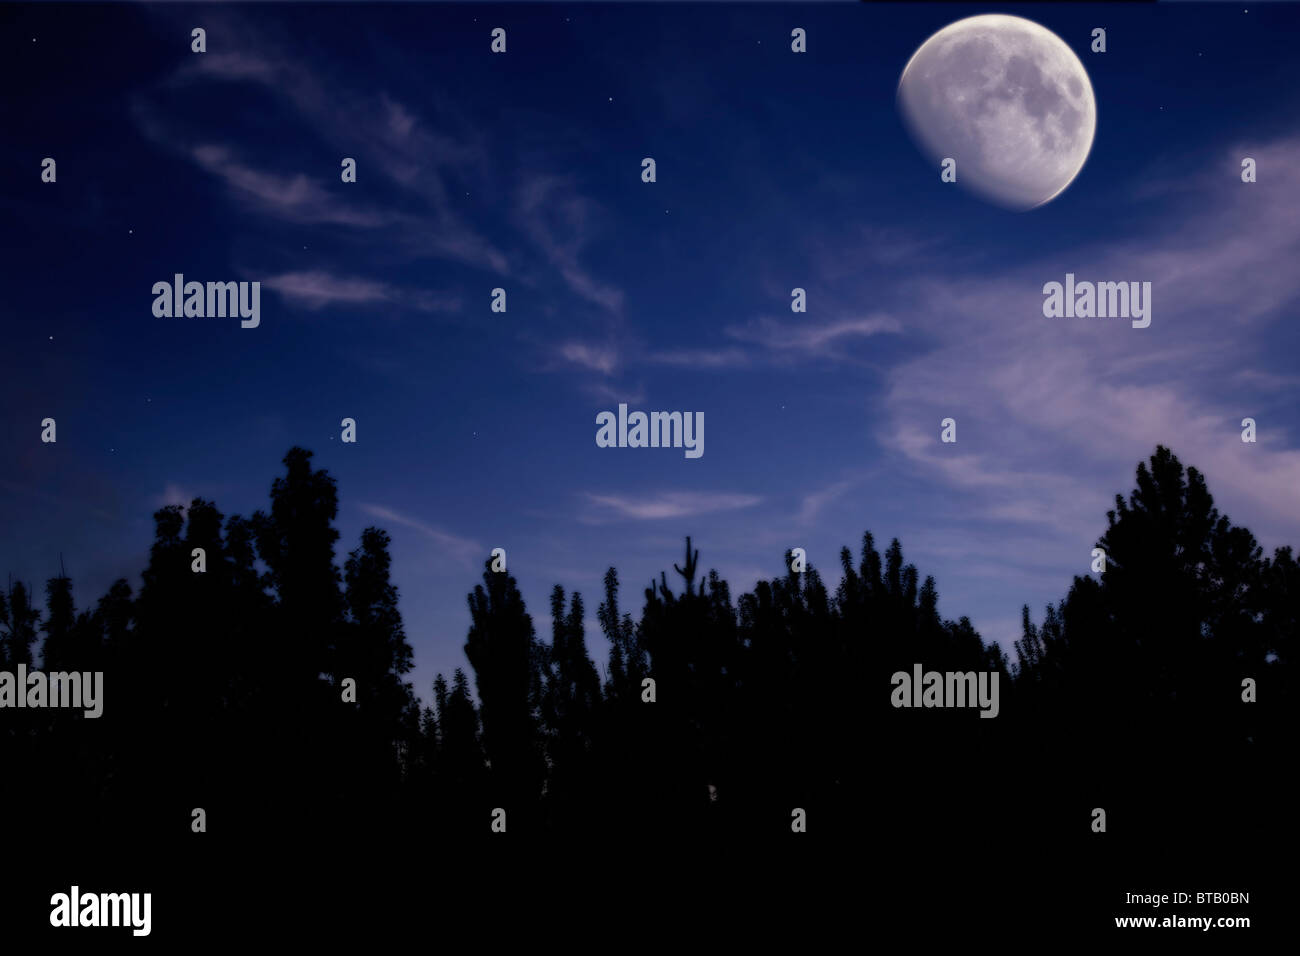 Paesaggio notturno con la luna, alberi silhouette, nuvole e stelle Foto Stock